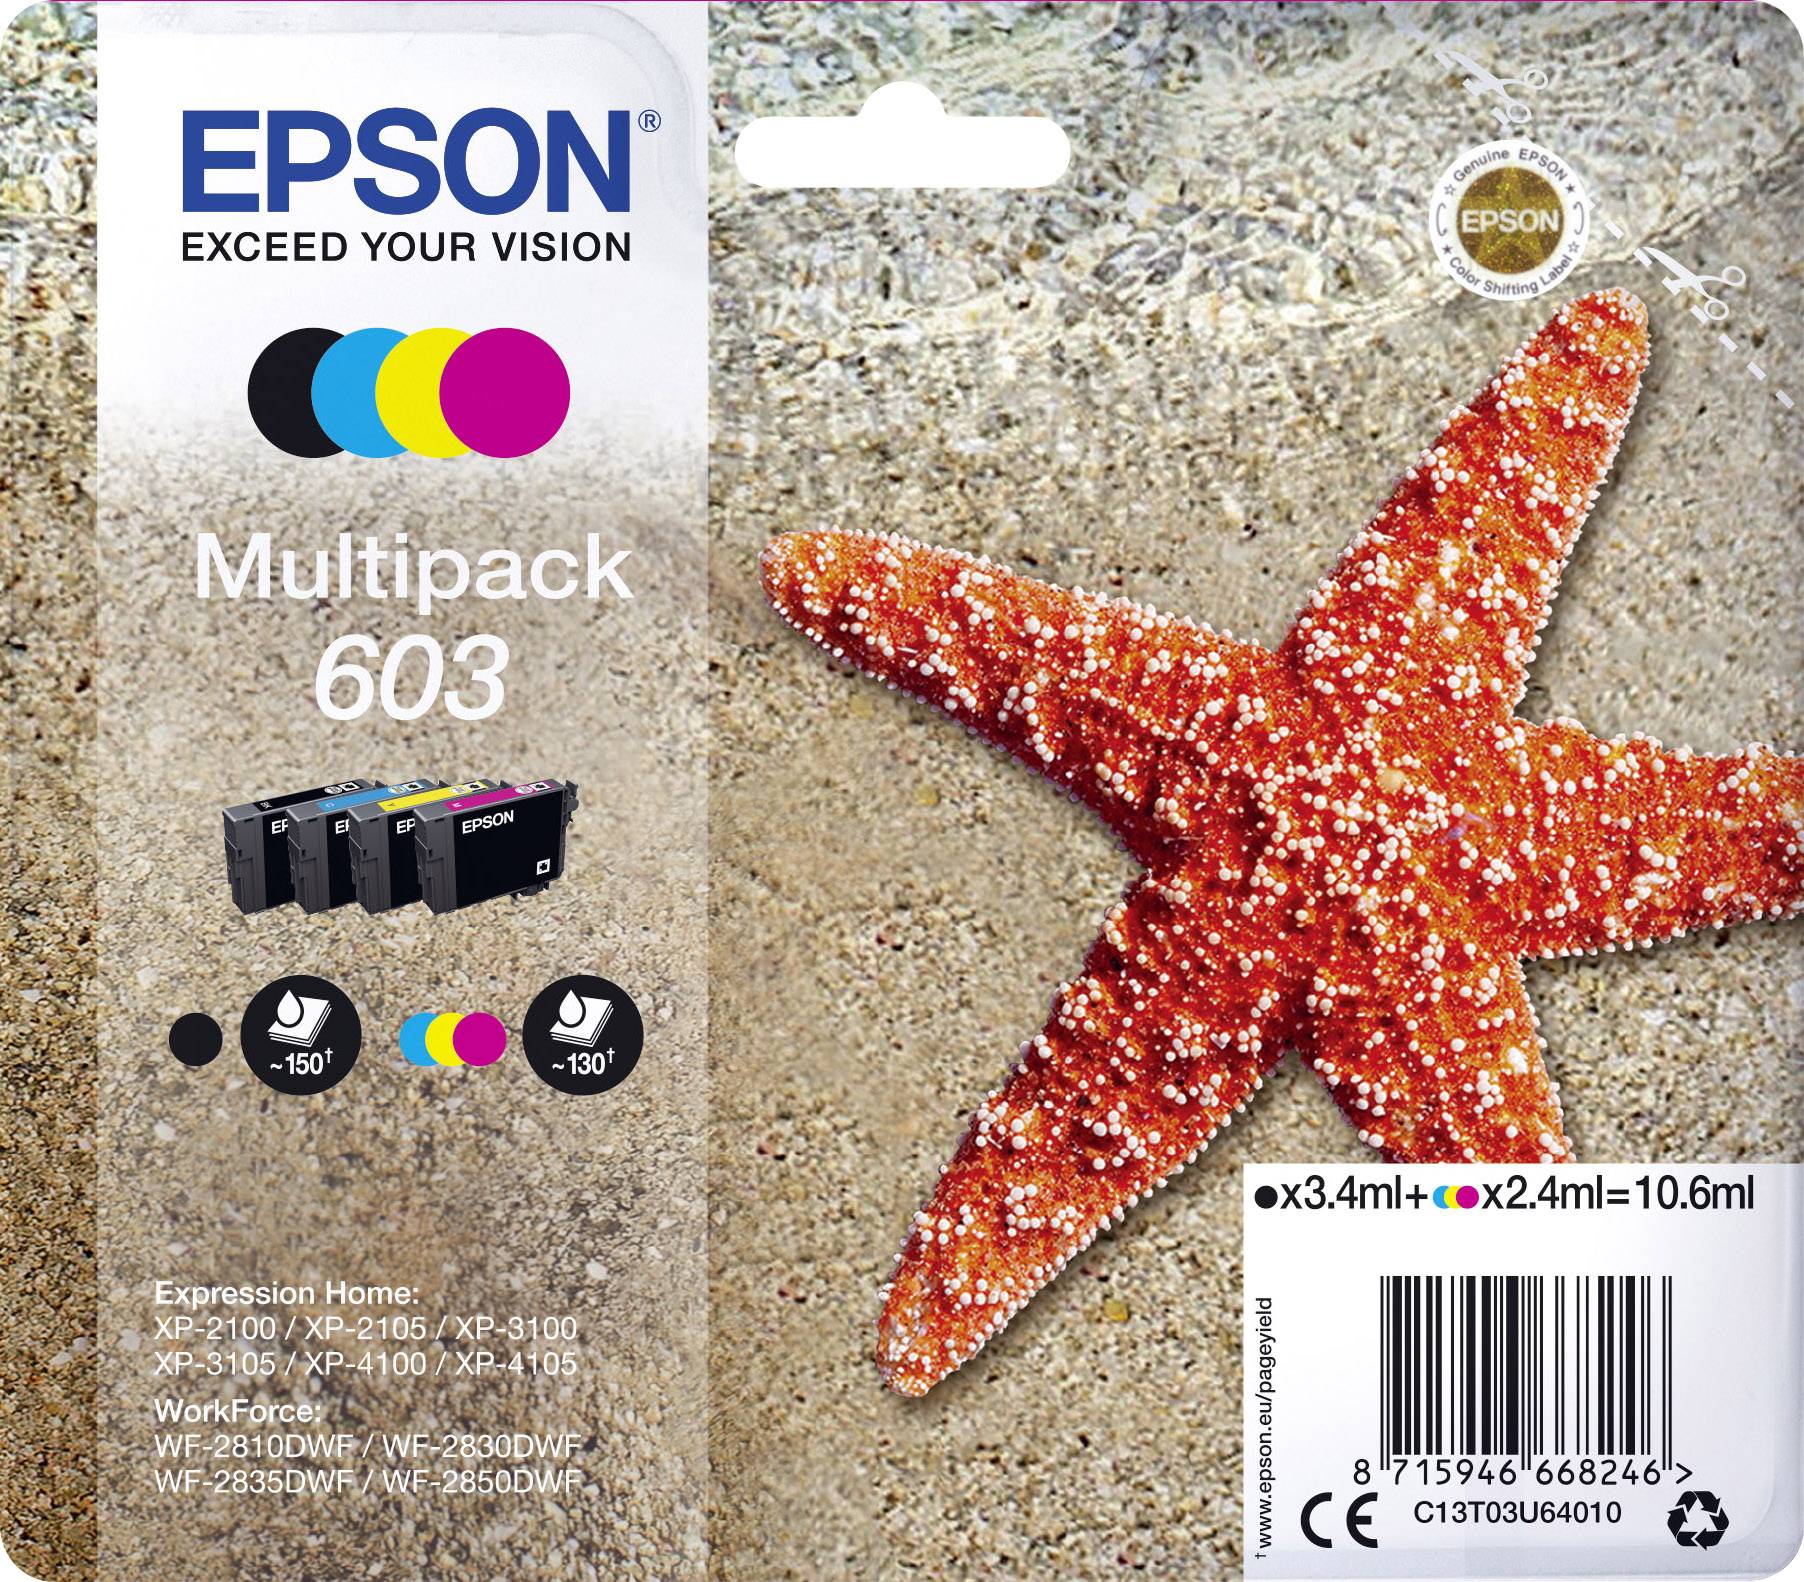 EPSON Tinte Multip.  1x3.4ml/3x2.4ml